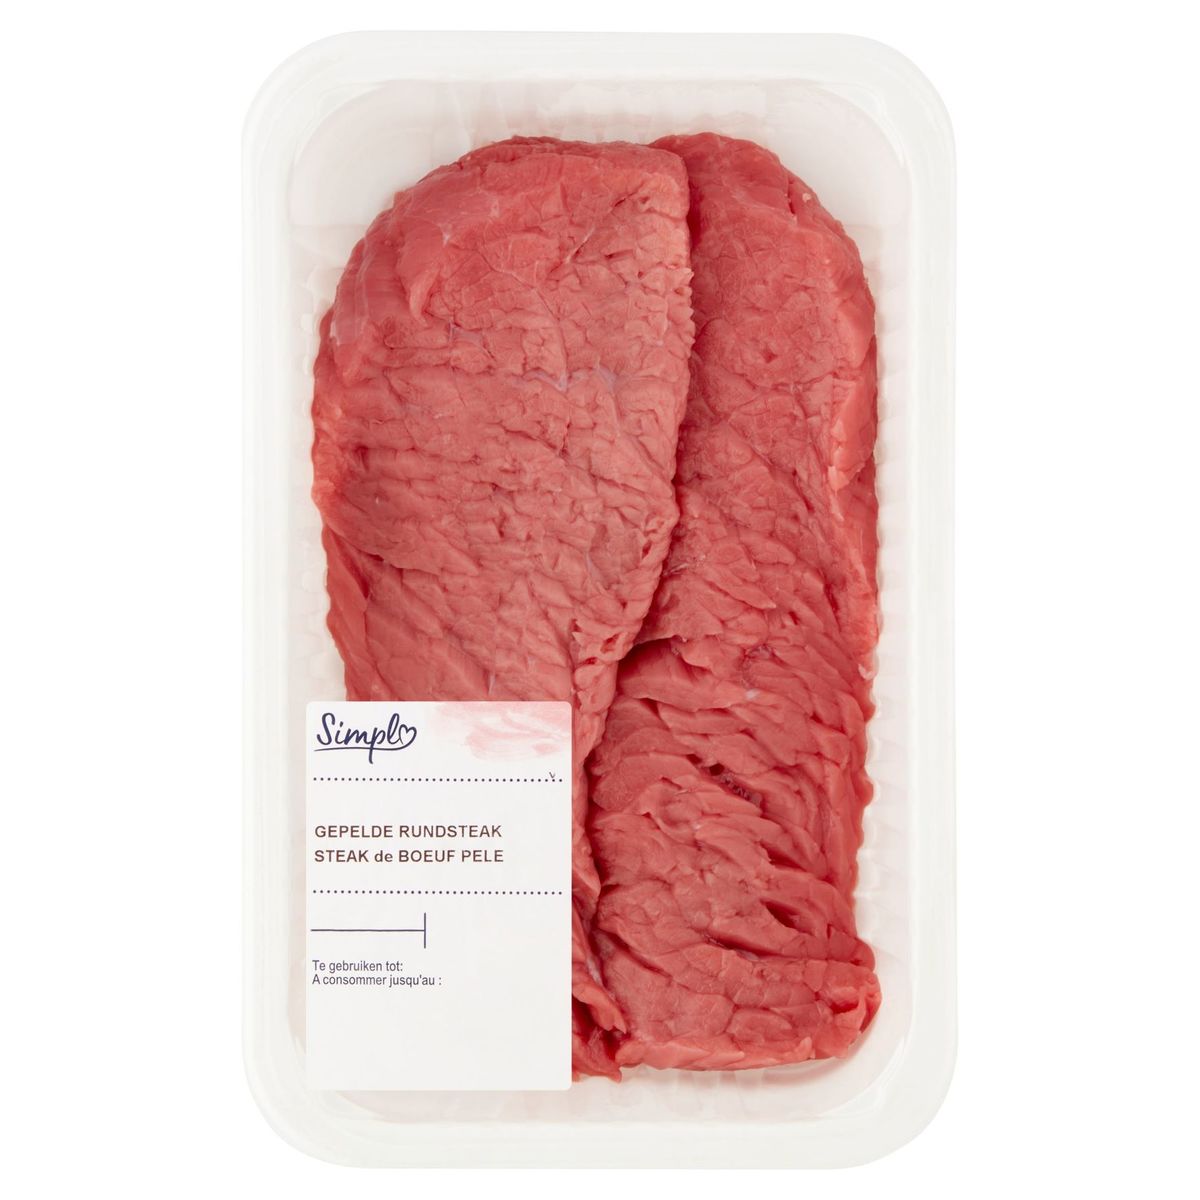 Simpl Steak de Boeuf Pele